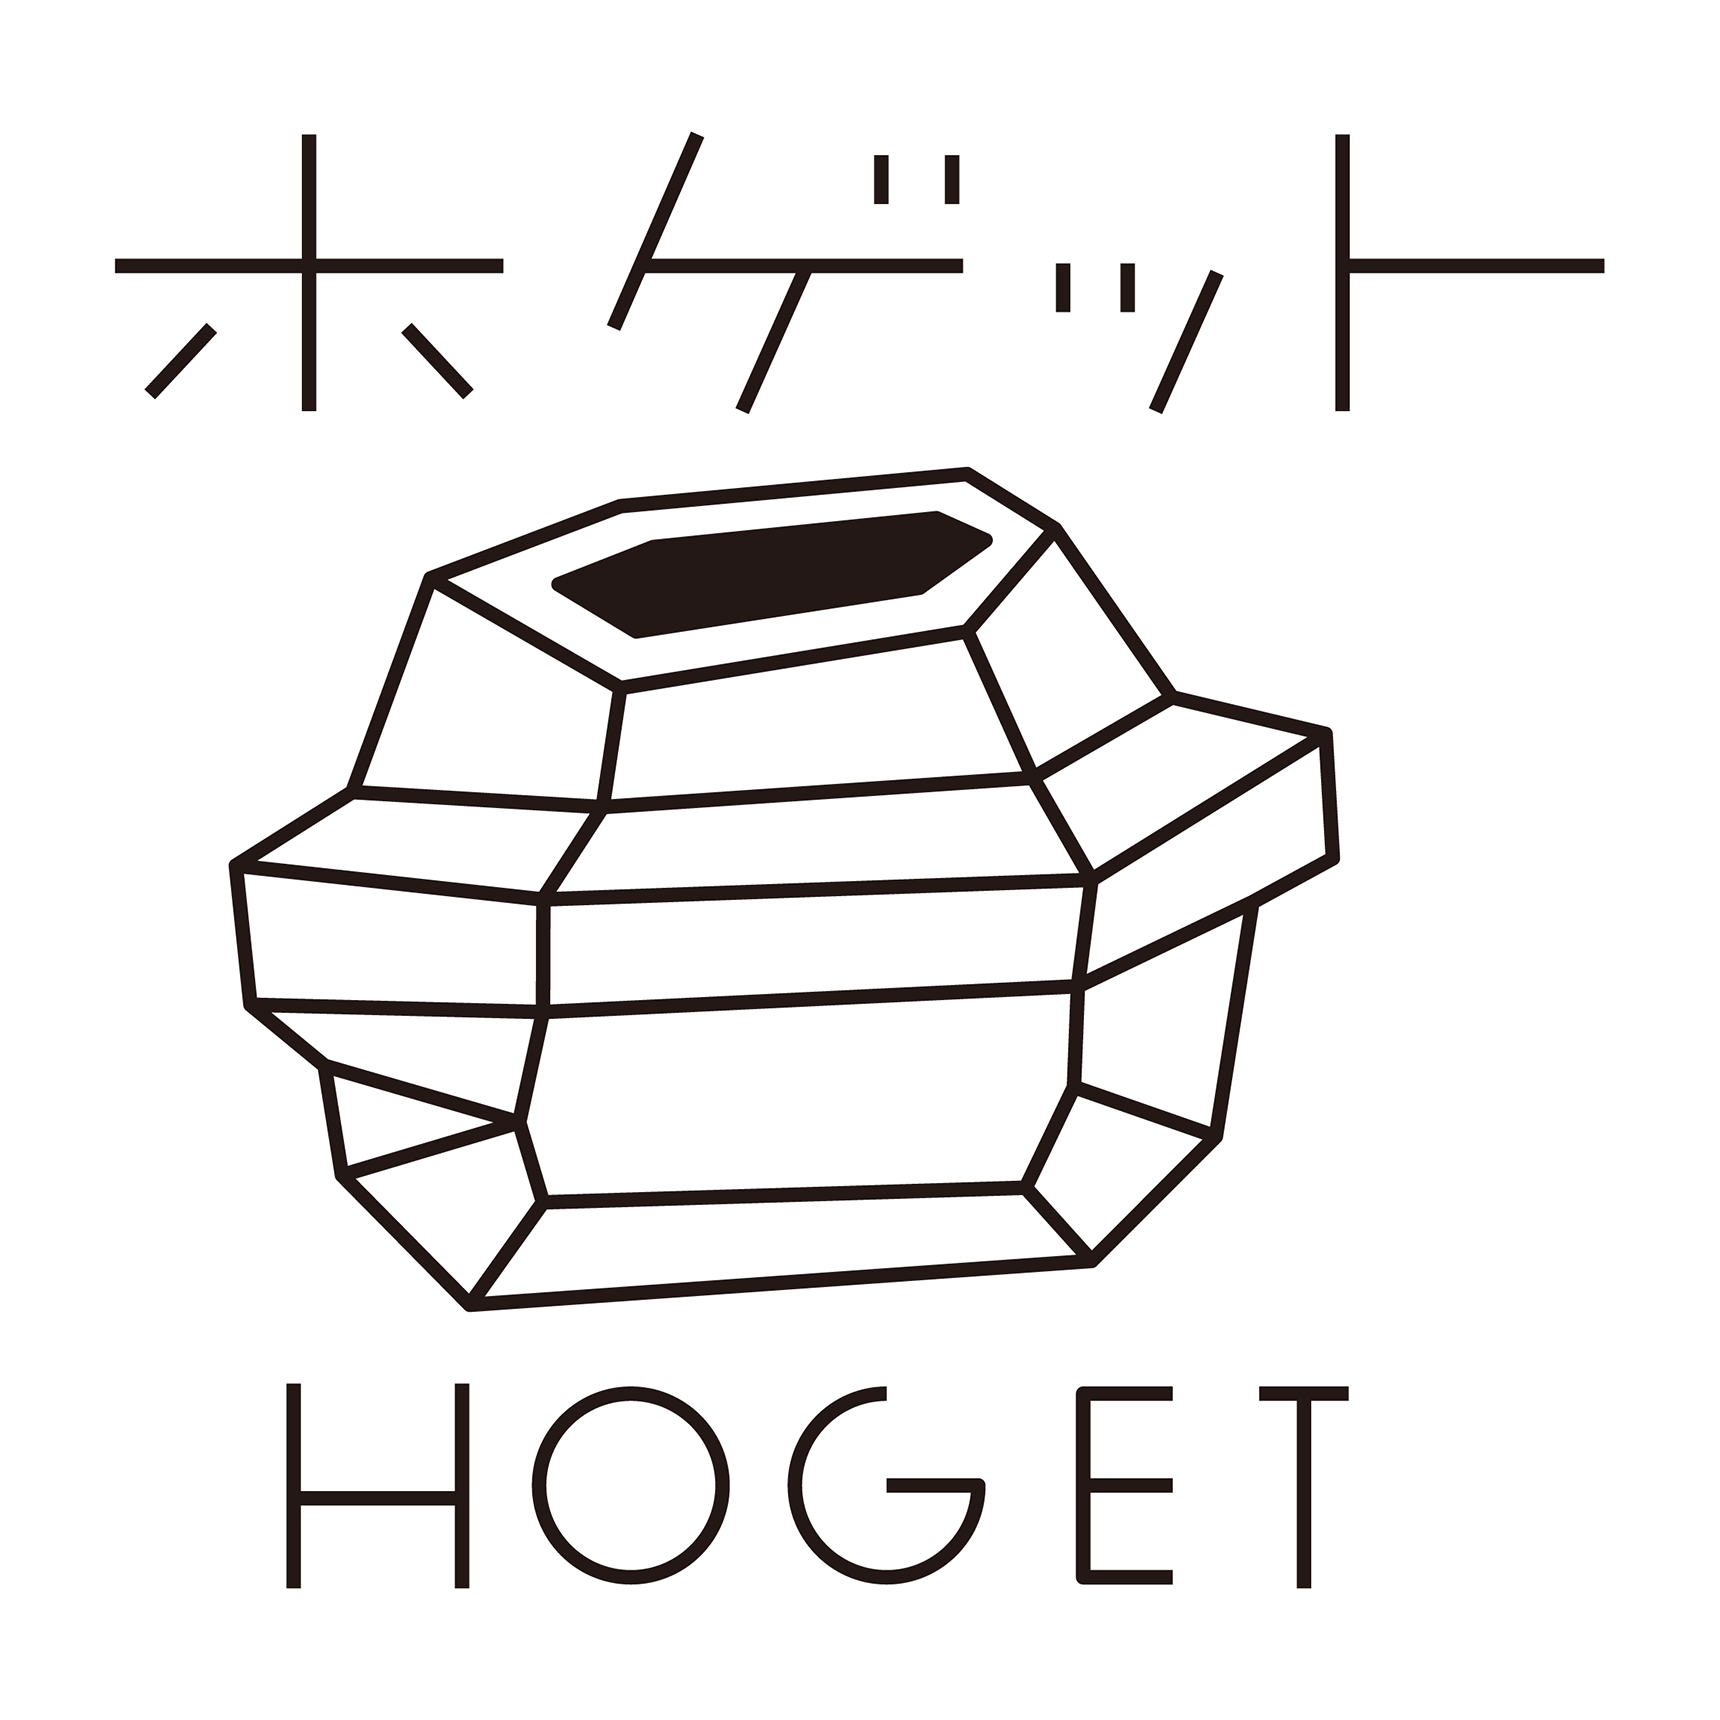 HOGET